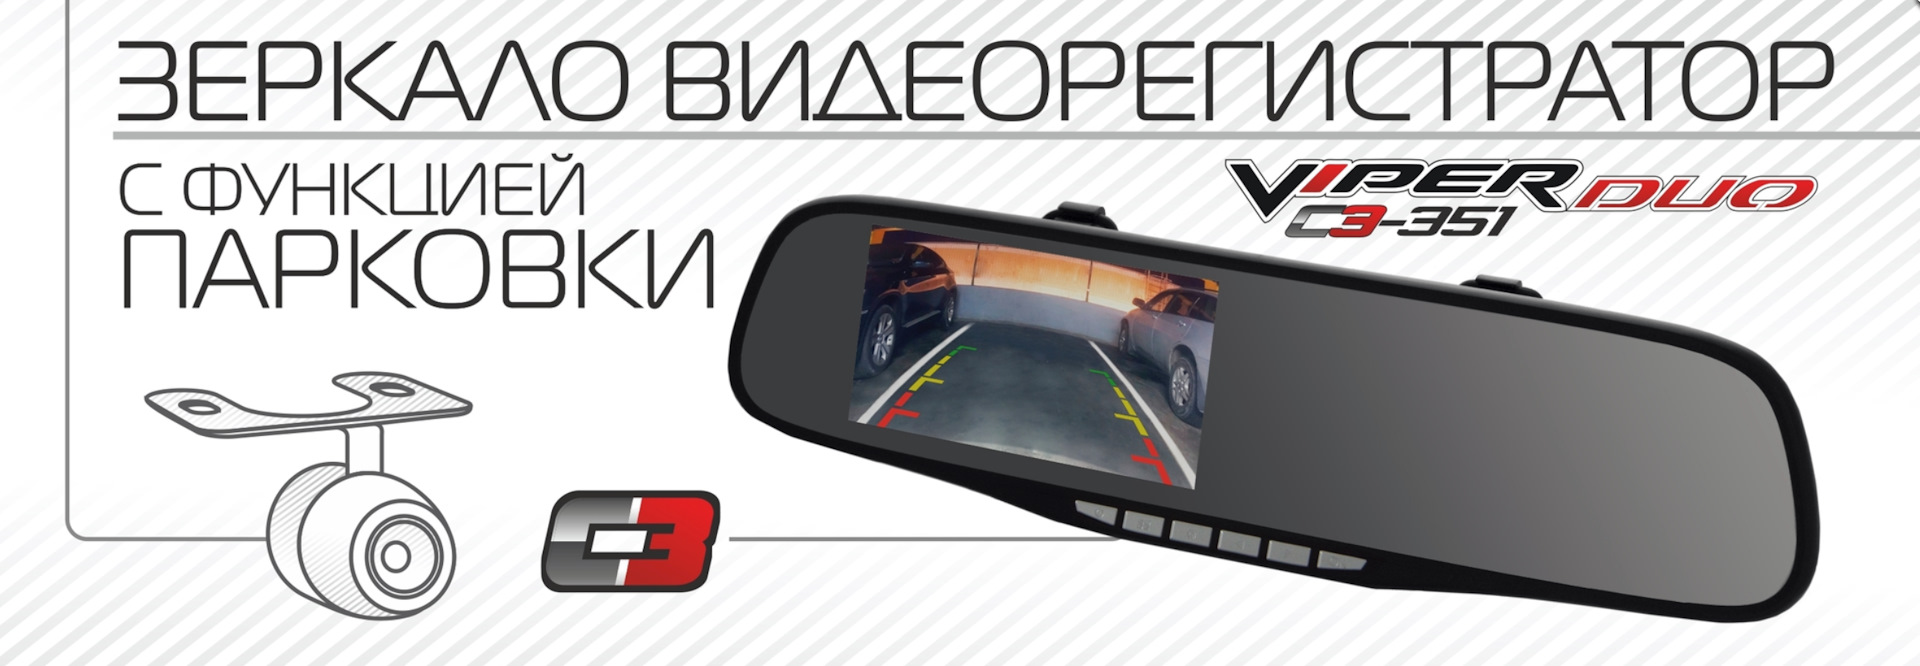 Автомобильный Видеорегистратор + зеркало + камера заднего вида VIPER C3-351 Duo — Компания С ТРИ на DRIVE2